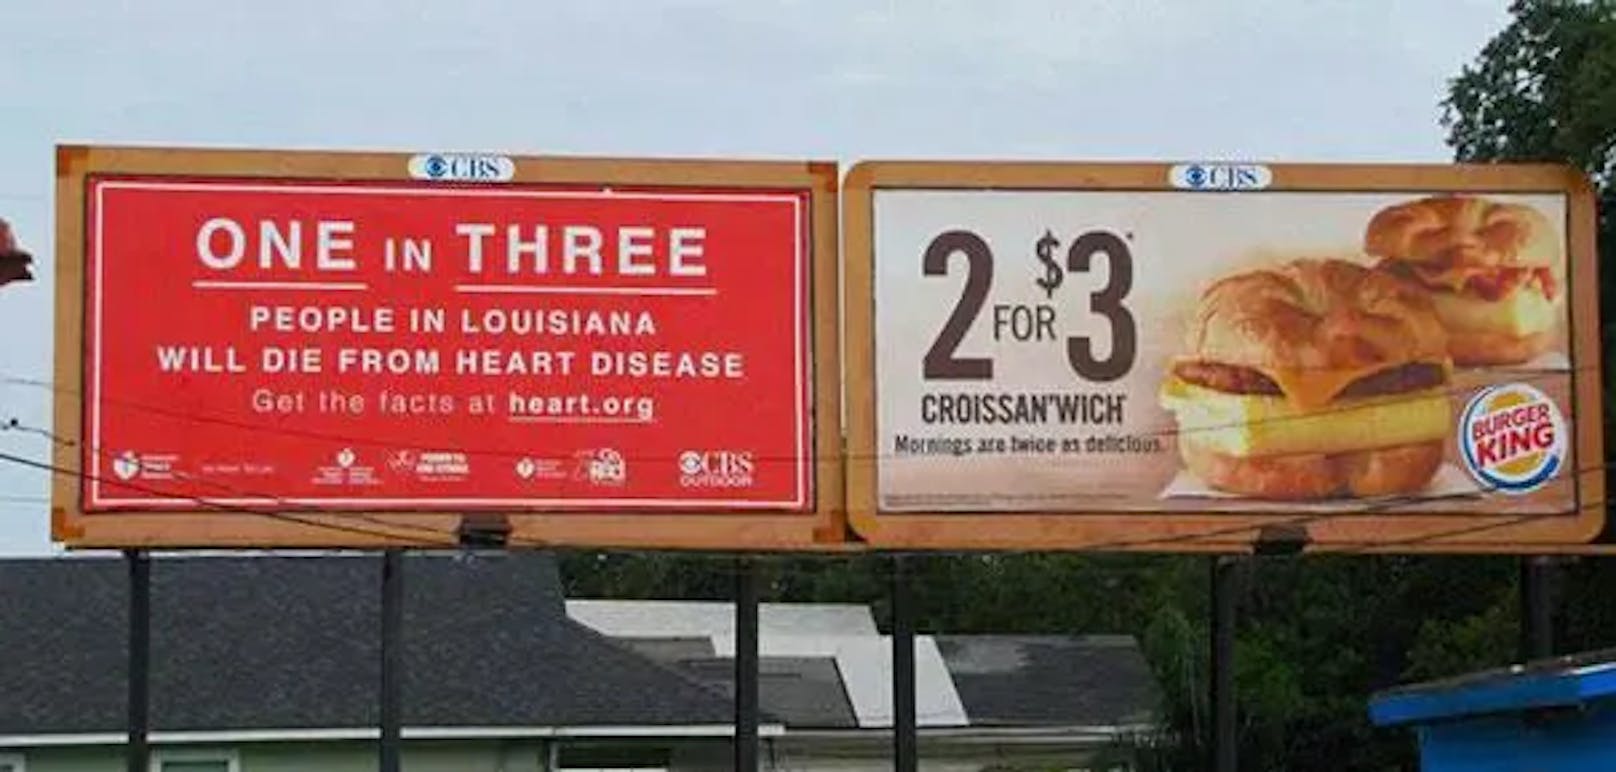 "Eine von drei Personen im US-Bundesstaat Louisiana stirbt an einer Herzerkrankung", vermeldet die Werbetafel links. Direkt daneben wird für besonders günstige Sandwiches von Burger King geworben: Zwei dieser Kalorienbomben kosten nur drei Dollar.